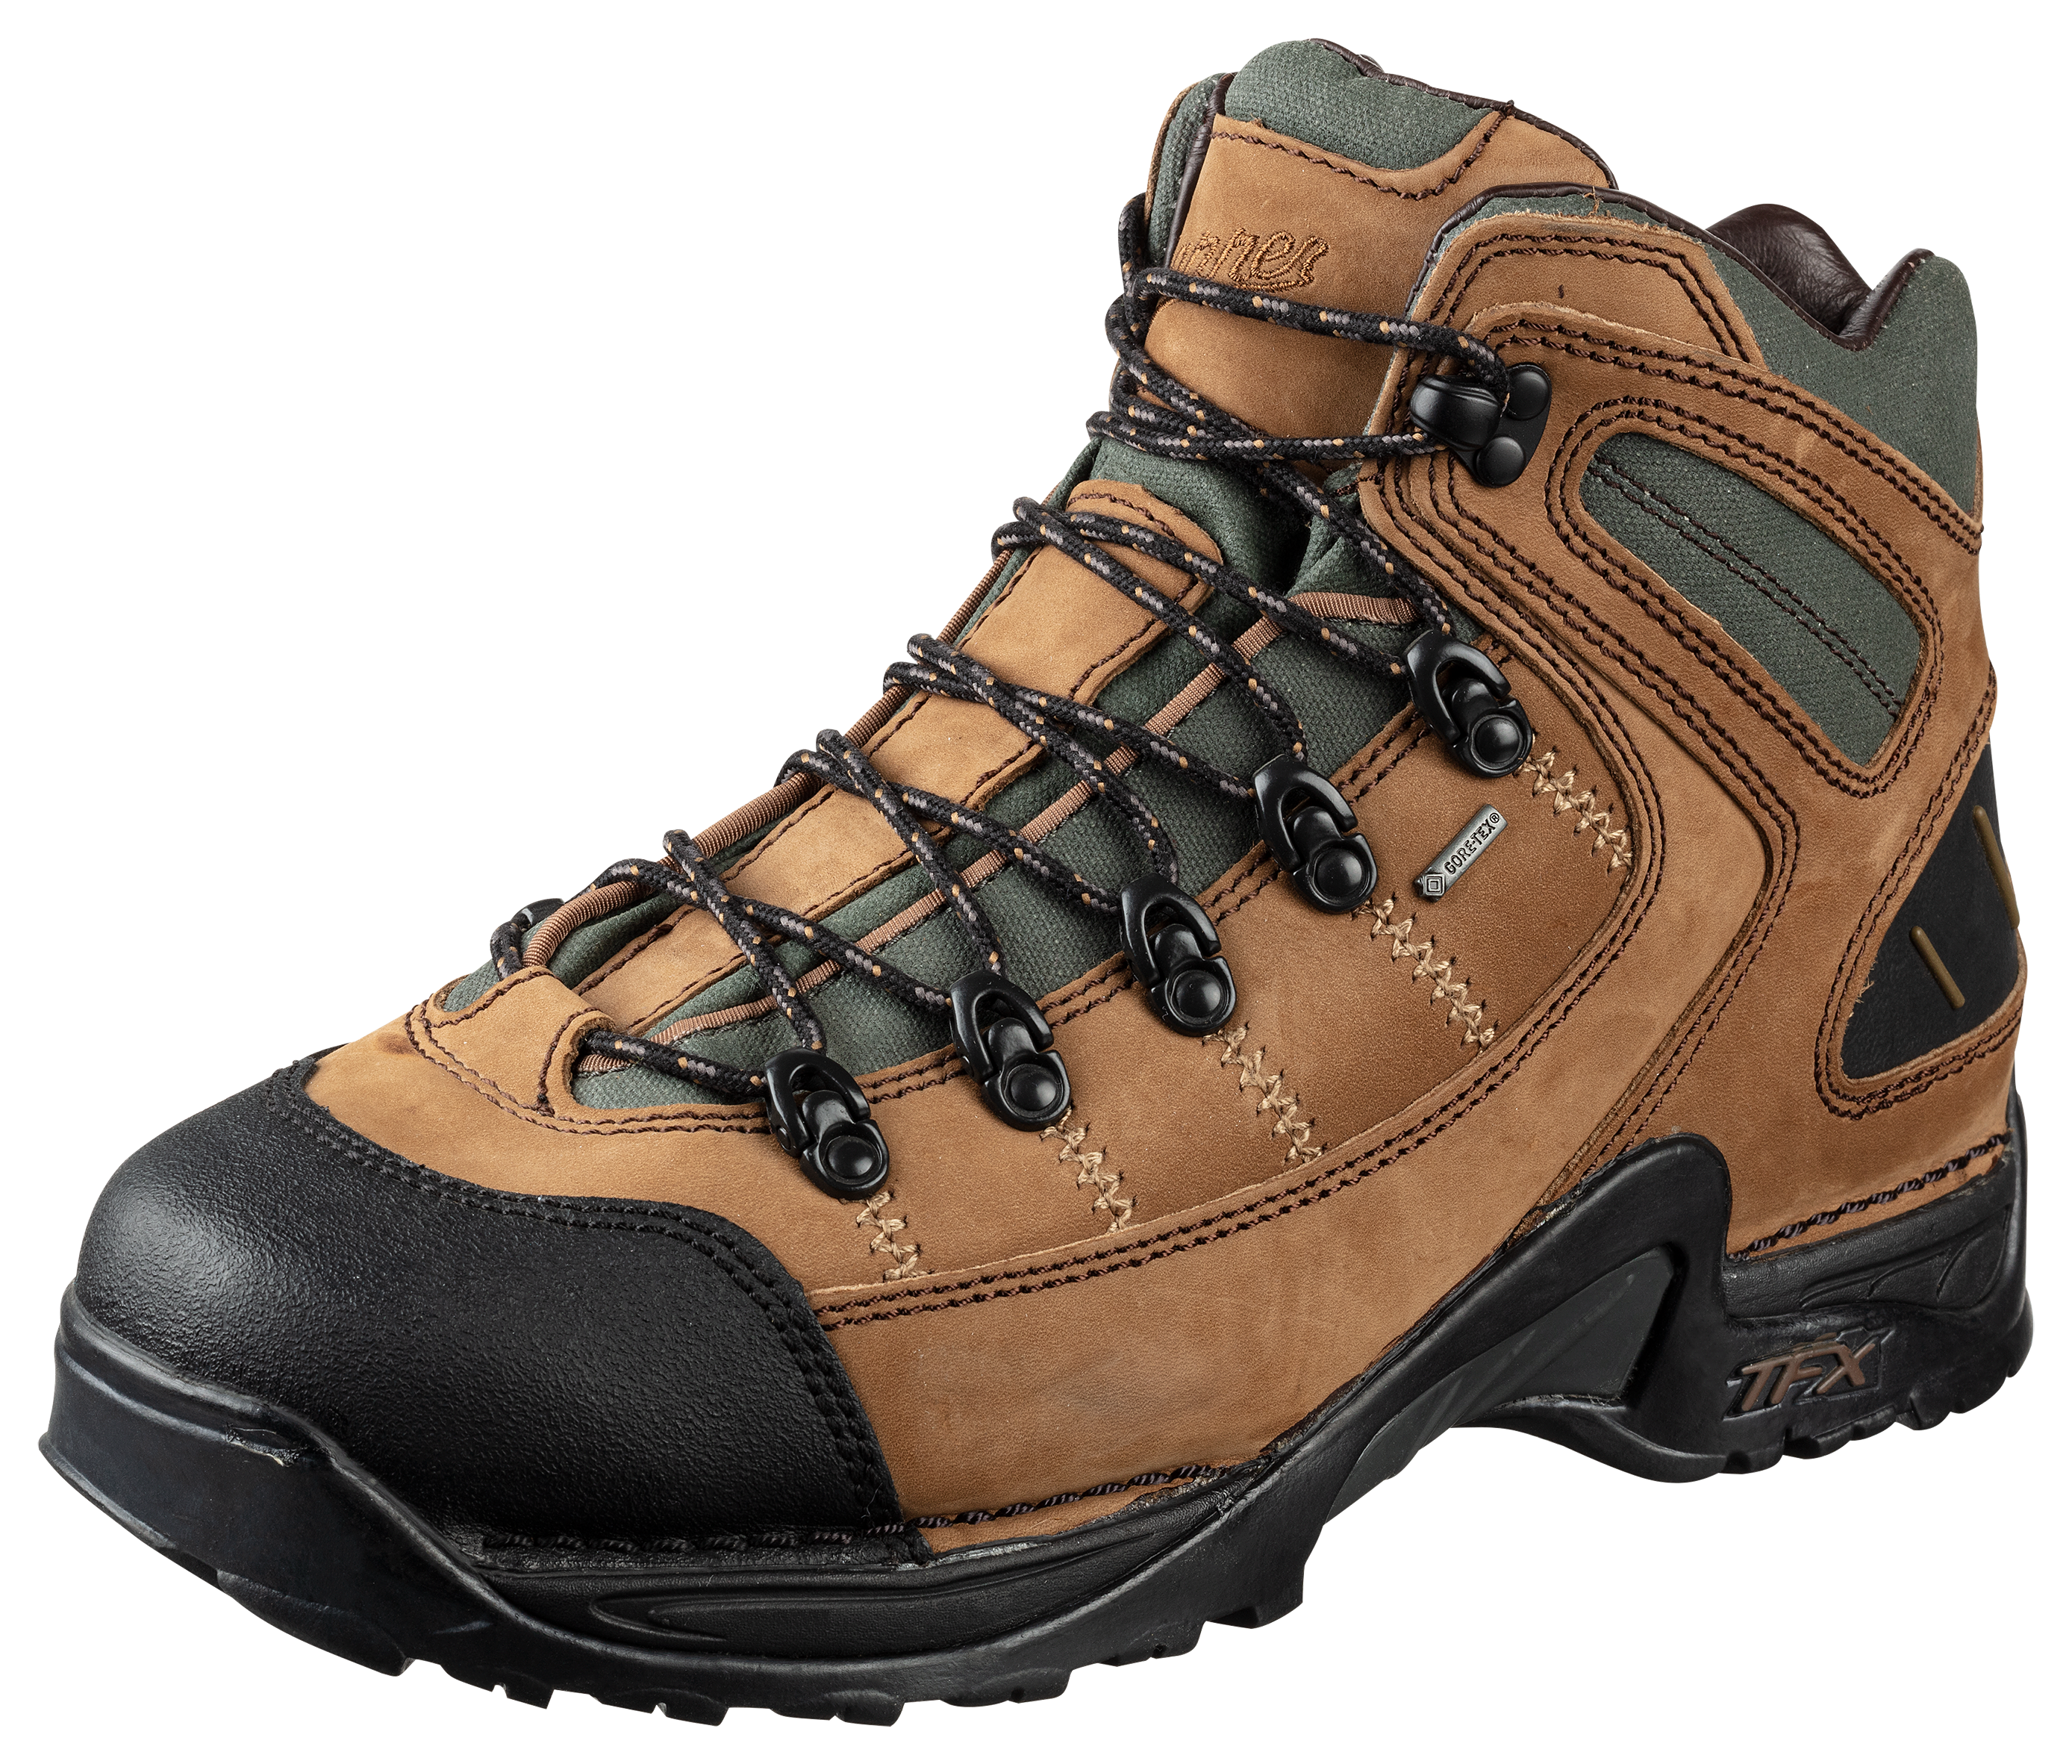 Danner 453 GORE-TEX Waterproof Hiking Boots for Men - Dark Tan - 9W